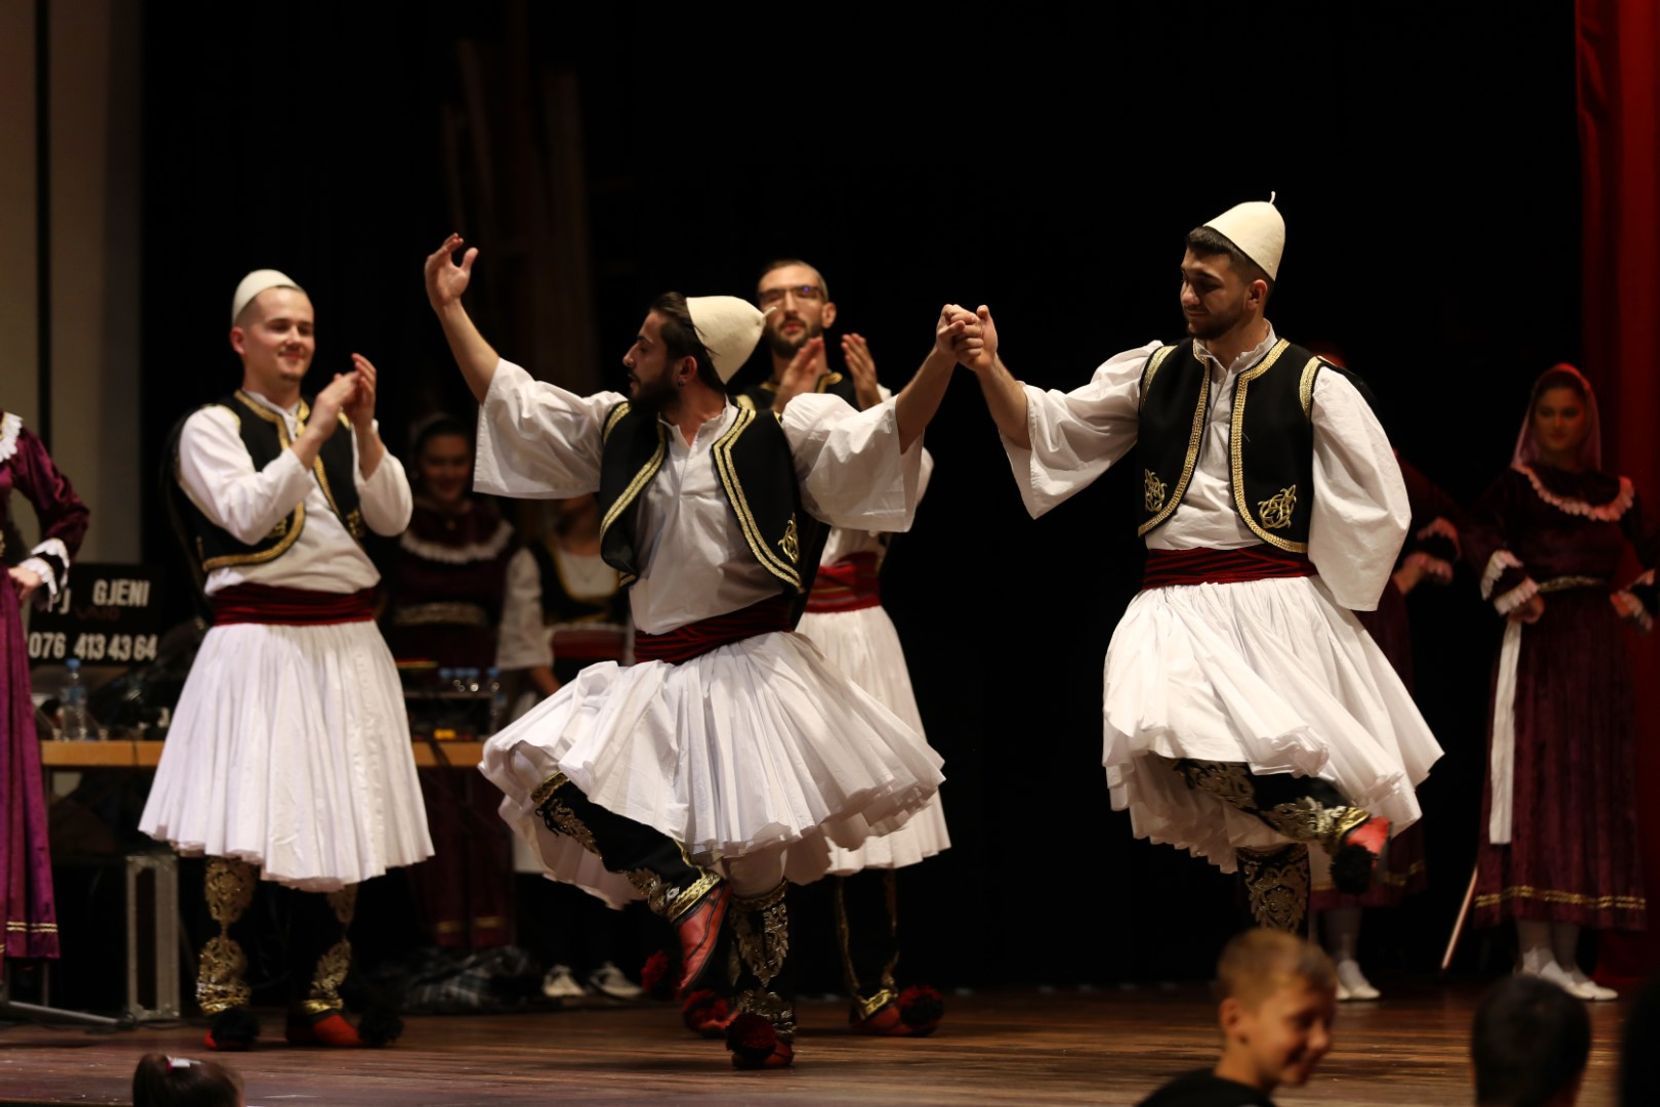 Auf dem Bild sind Tänzer zu sehen, die traditionell albanisch tanzen.